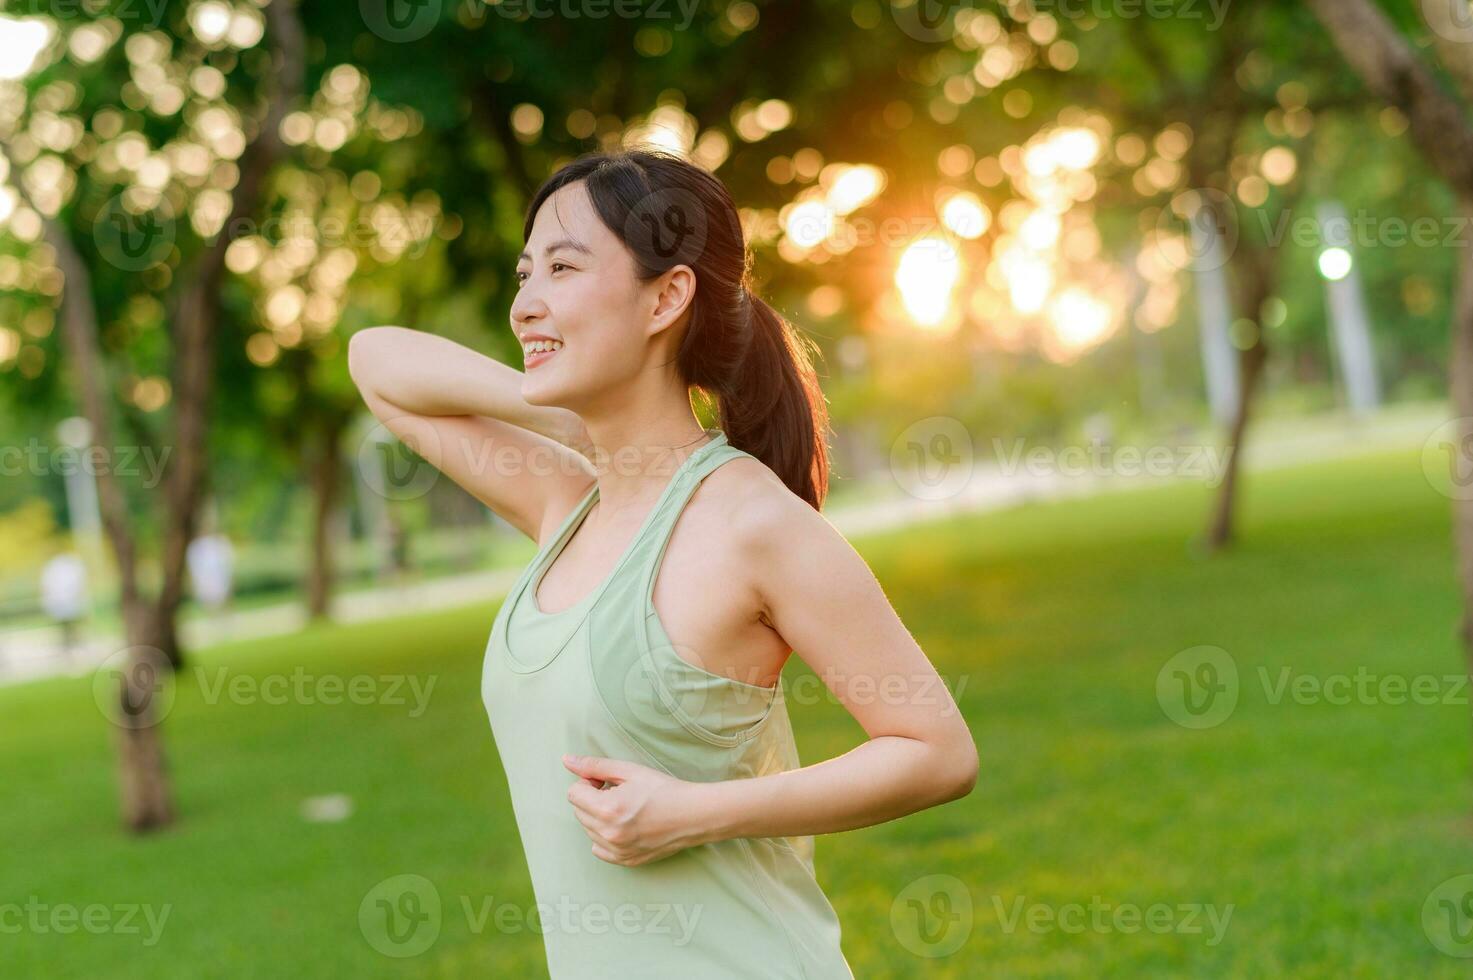 vrouw jogger. fit jong Aziatisch vrouw met groen sportkleding uitrekken spier in park voordat rennen en genieten van een gezond buitenshuis. geschiktheid loper meisje in openbaar park. welzijn wezen concept foto